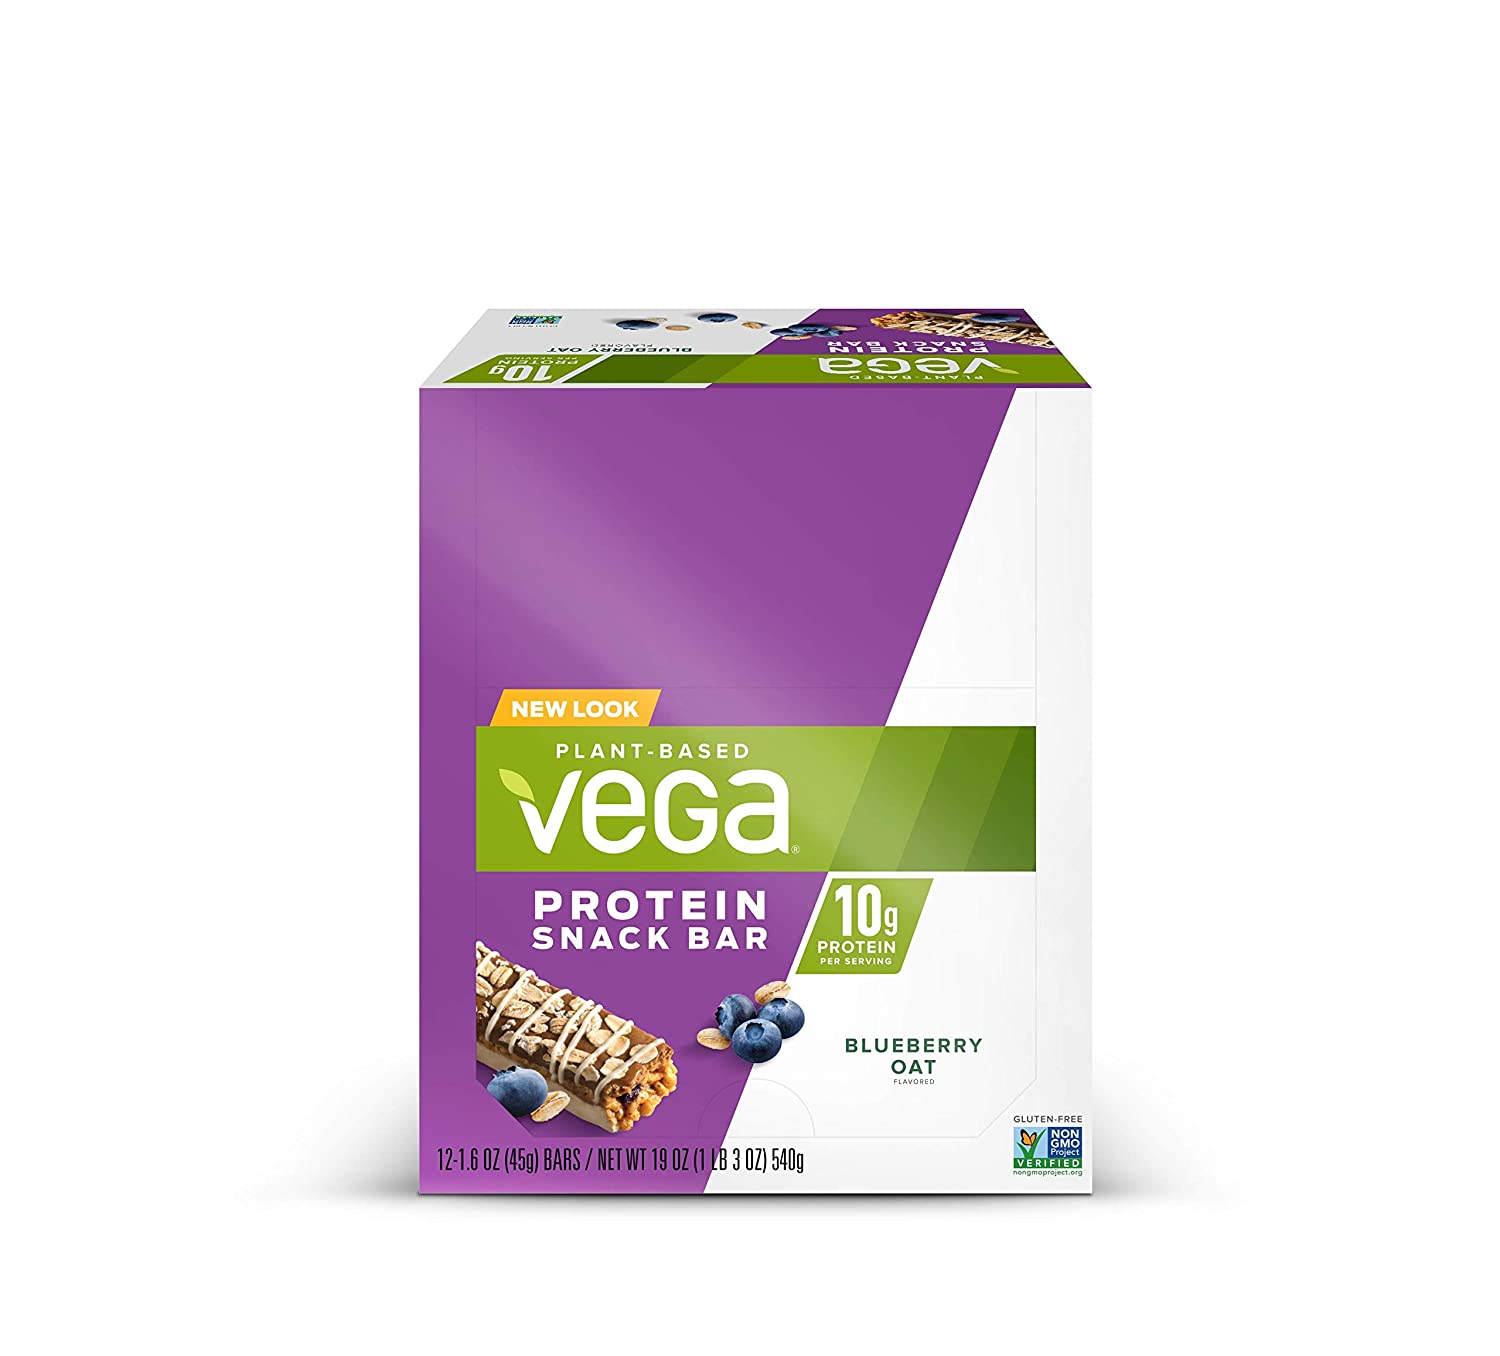 Vega Blueberry Oat Protein Snack Bar